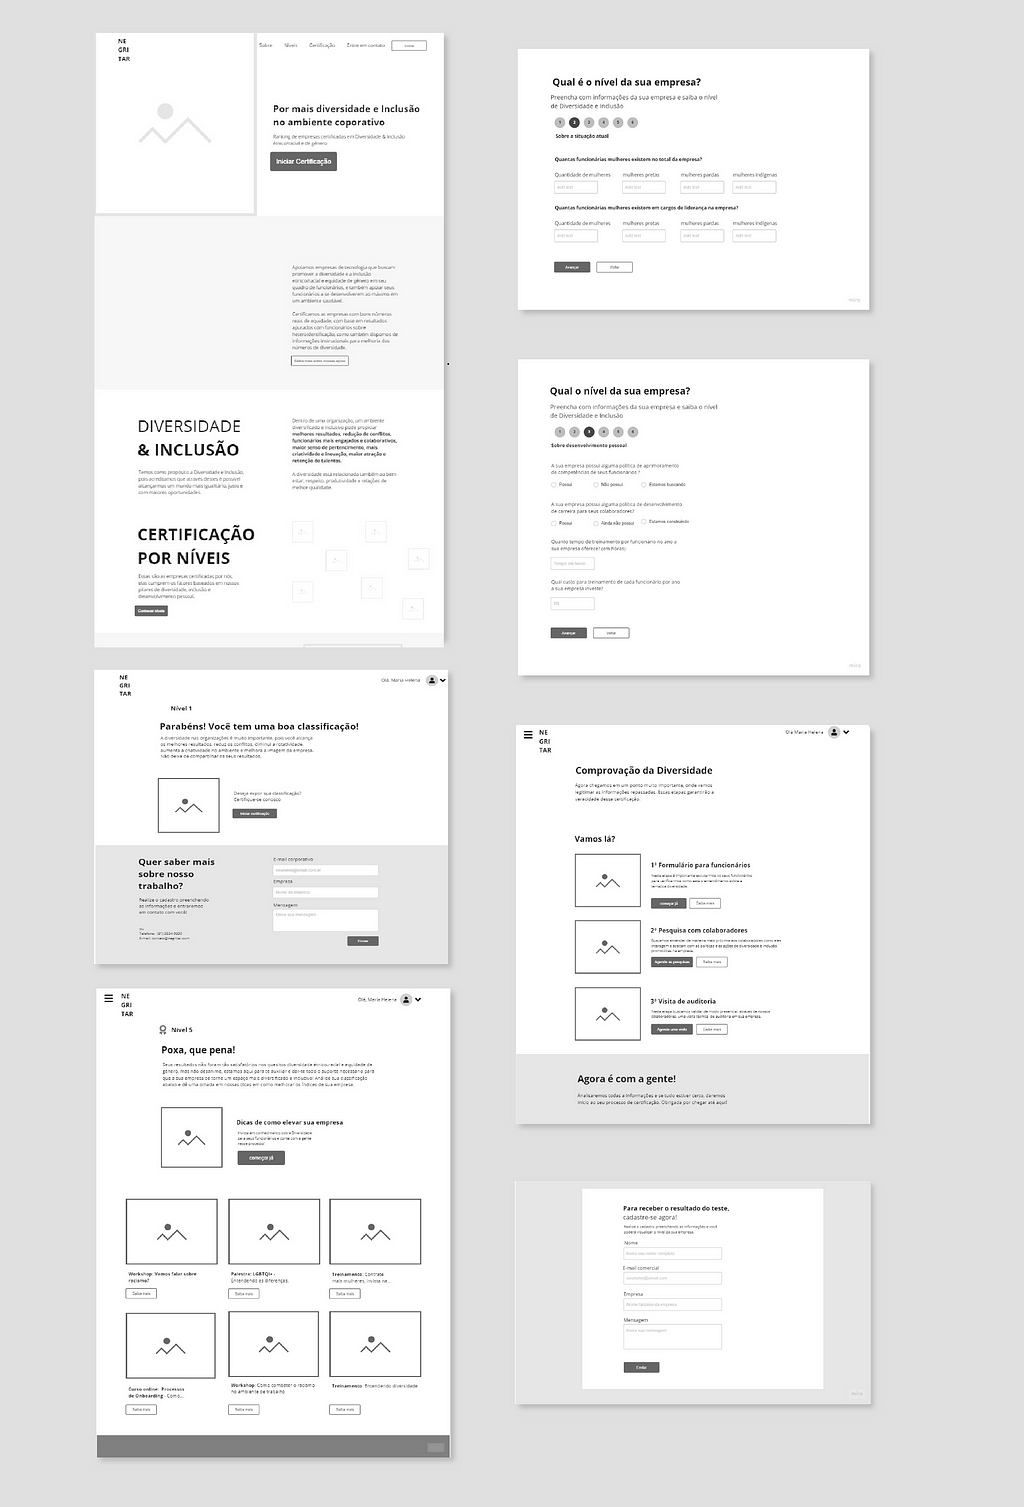 7 imagens de esquemas da interface em preto e branco, chama-se wireframe.